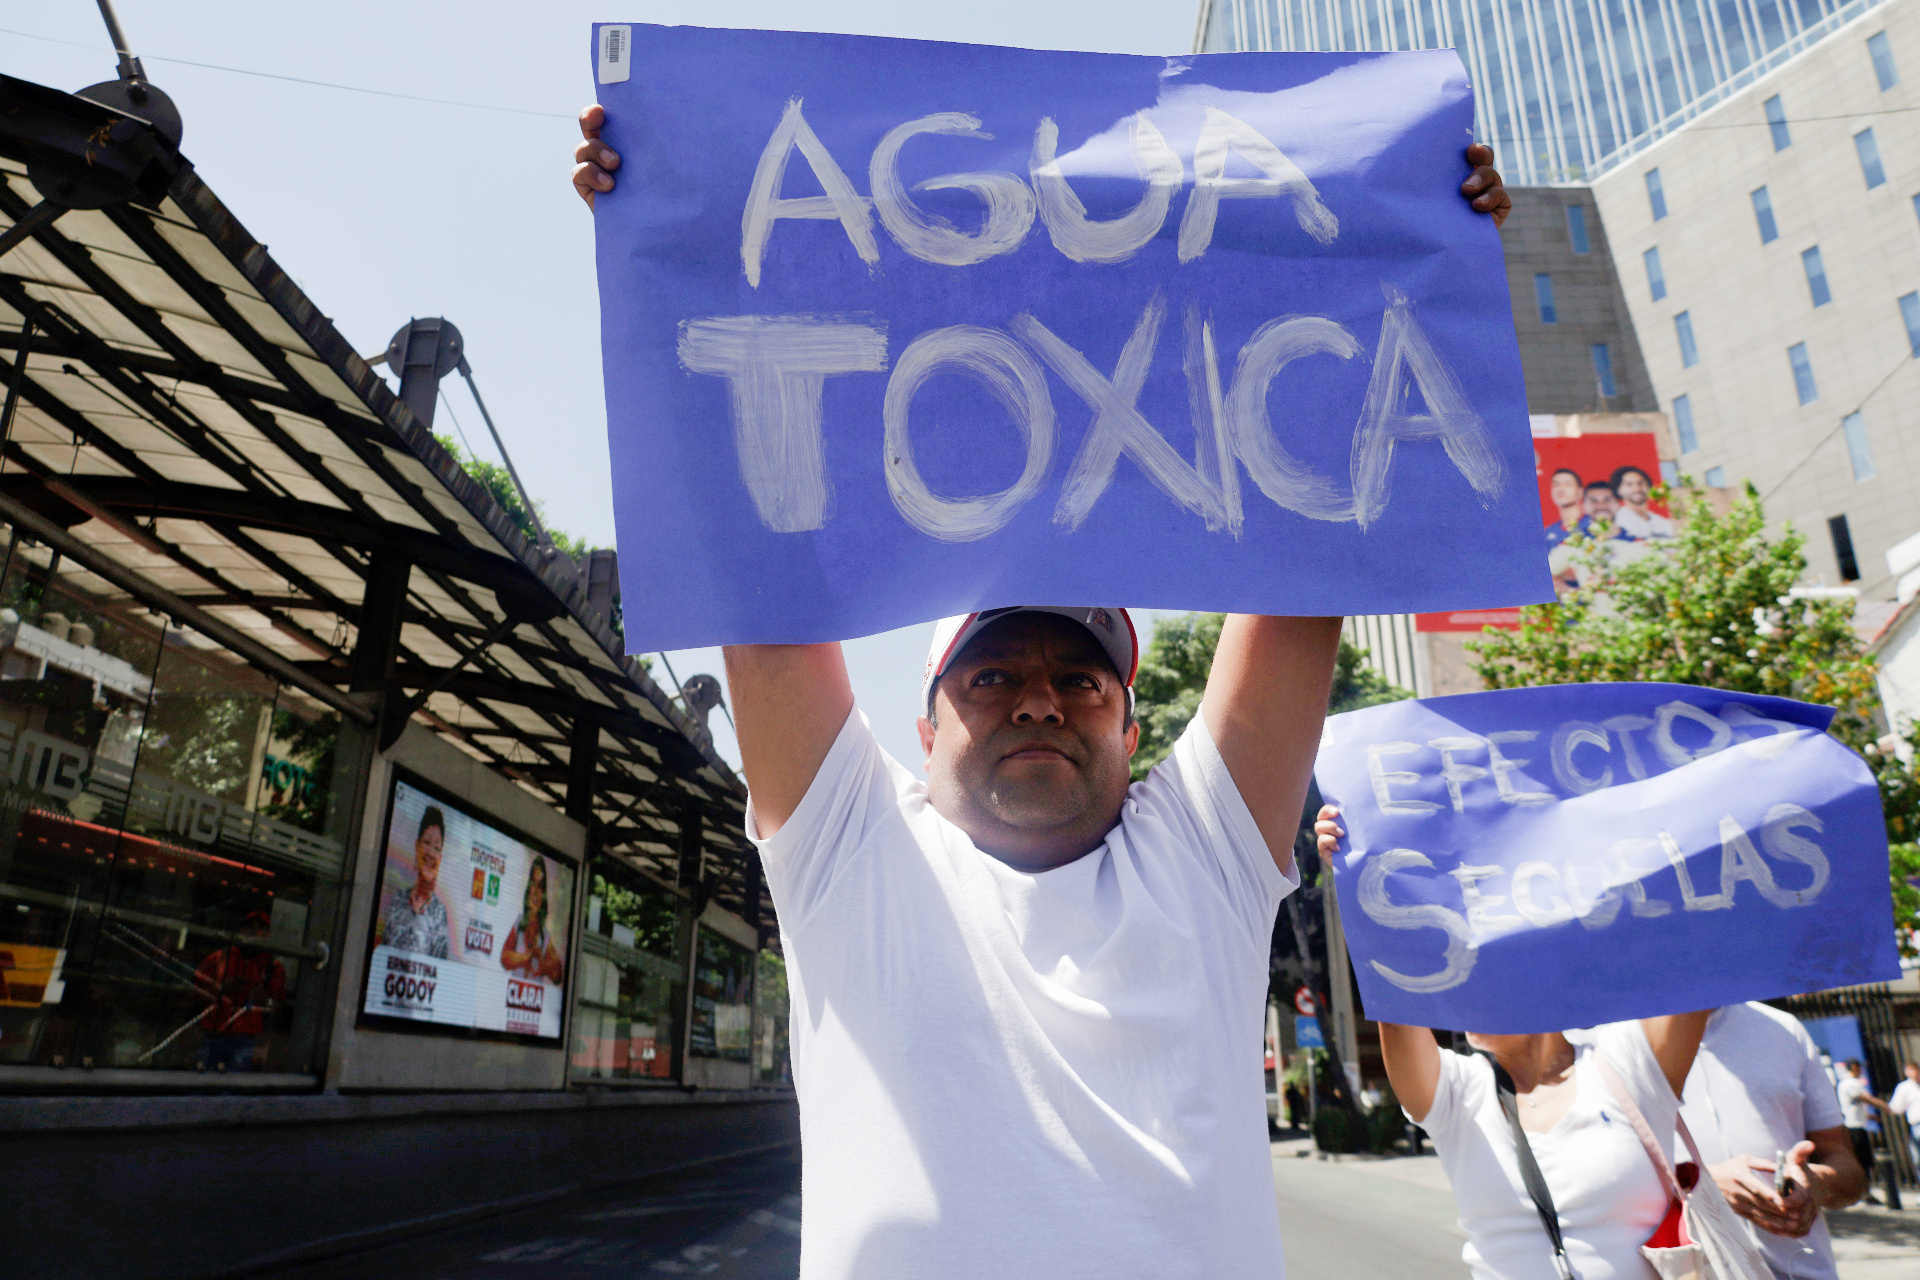 Agua contaminada en Ciudad de México: cronología de un desastre